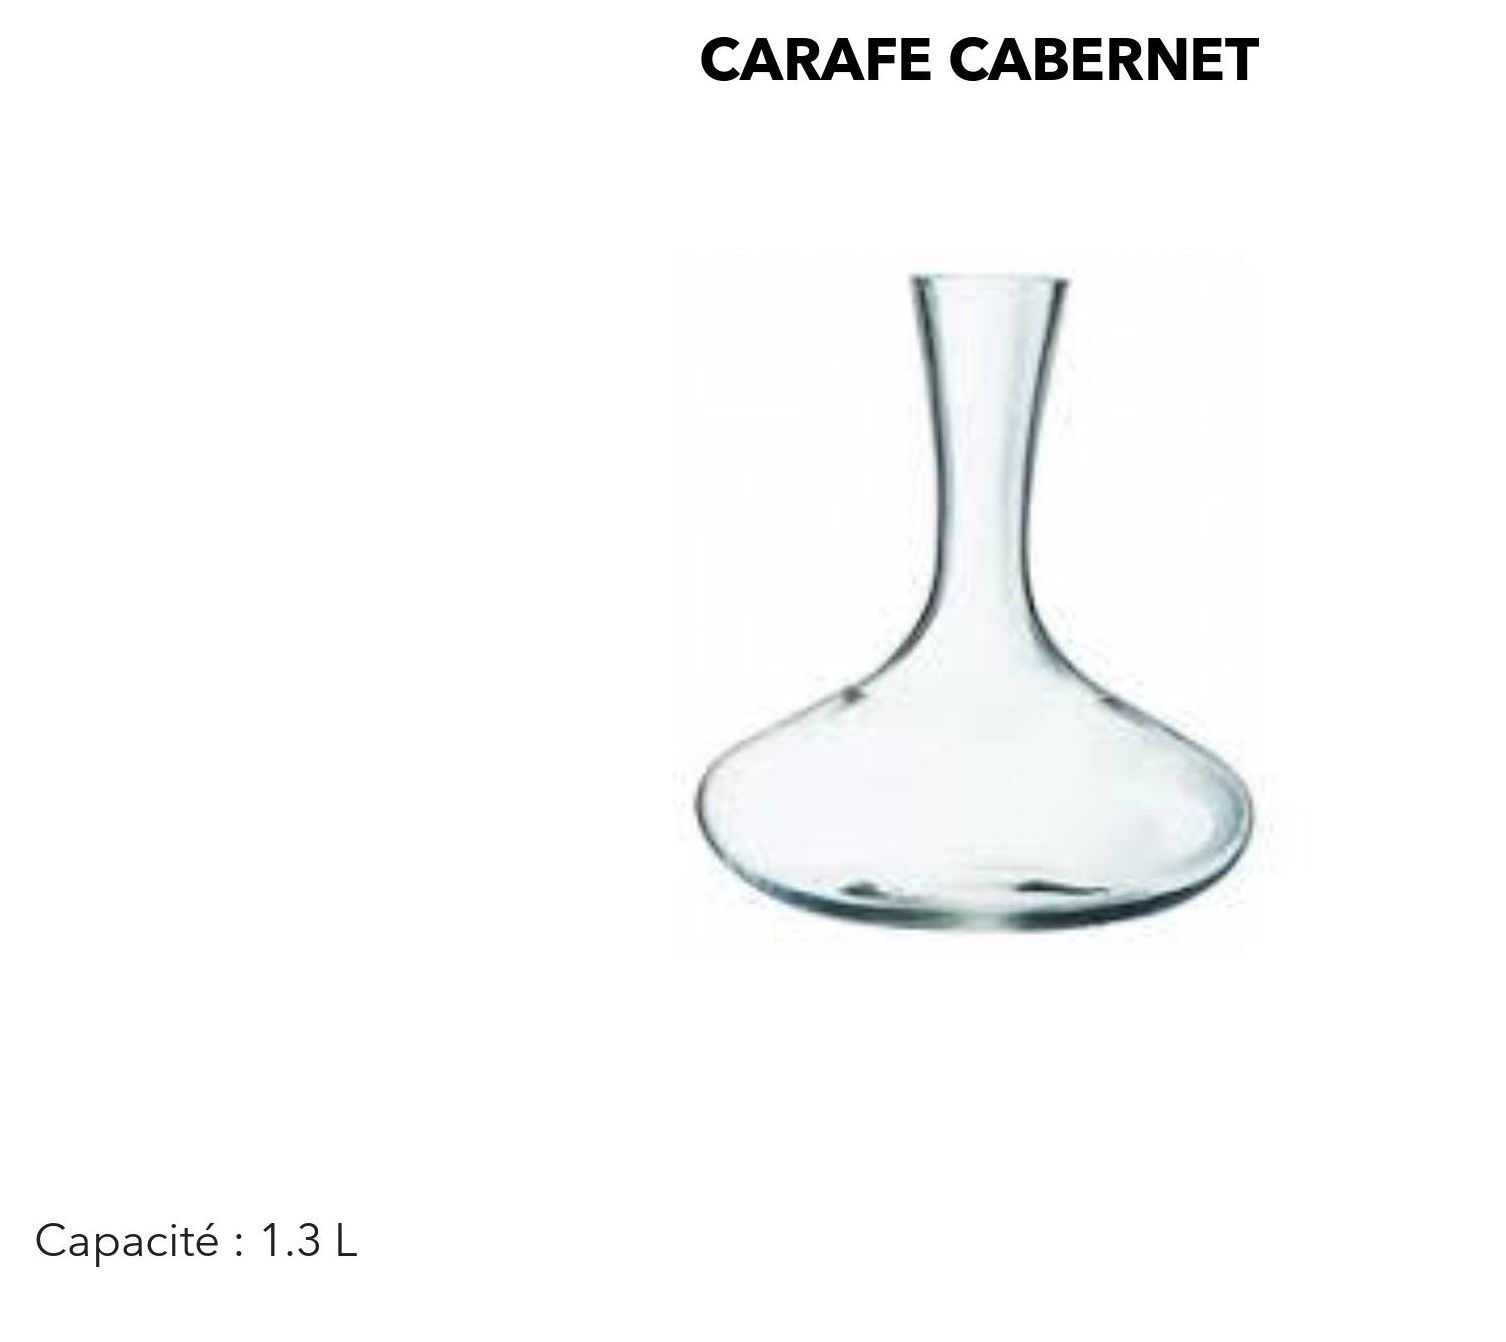 Carafe Cabernet (capacité 1.3L) x 3 unités mise à prix 90€